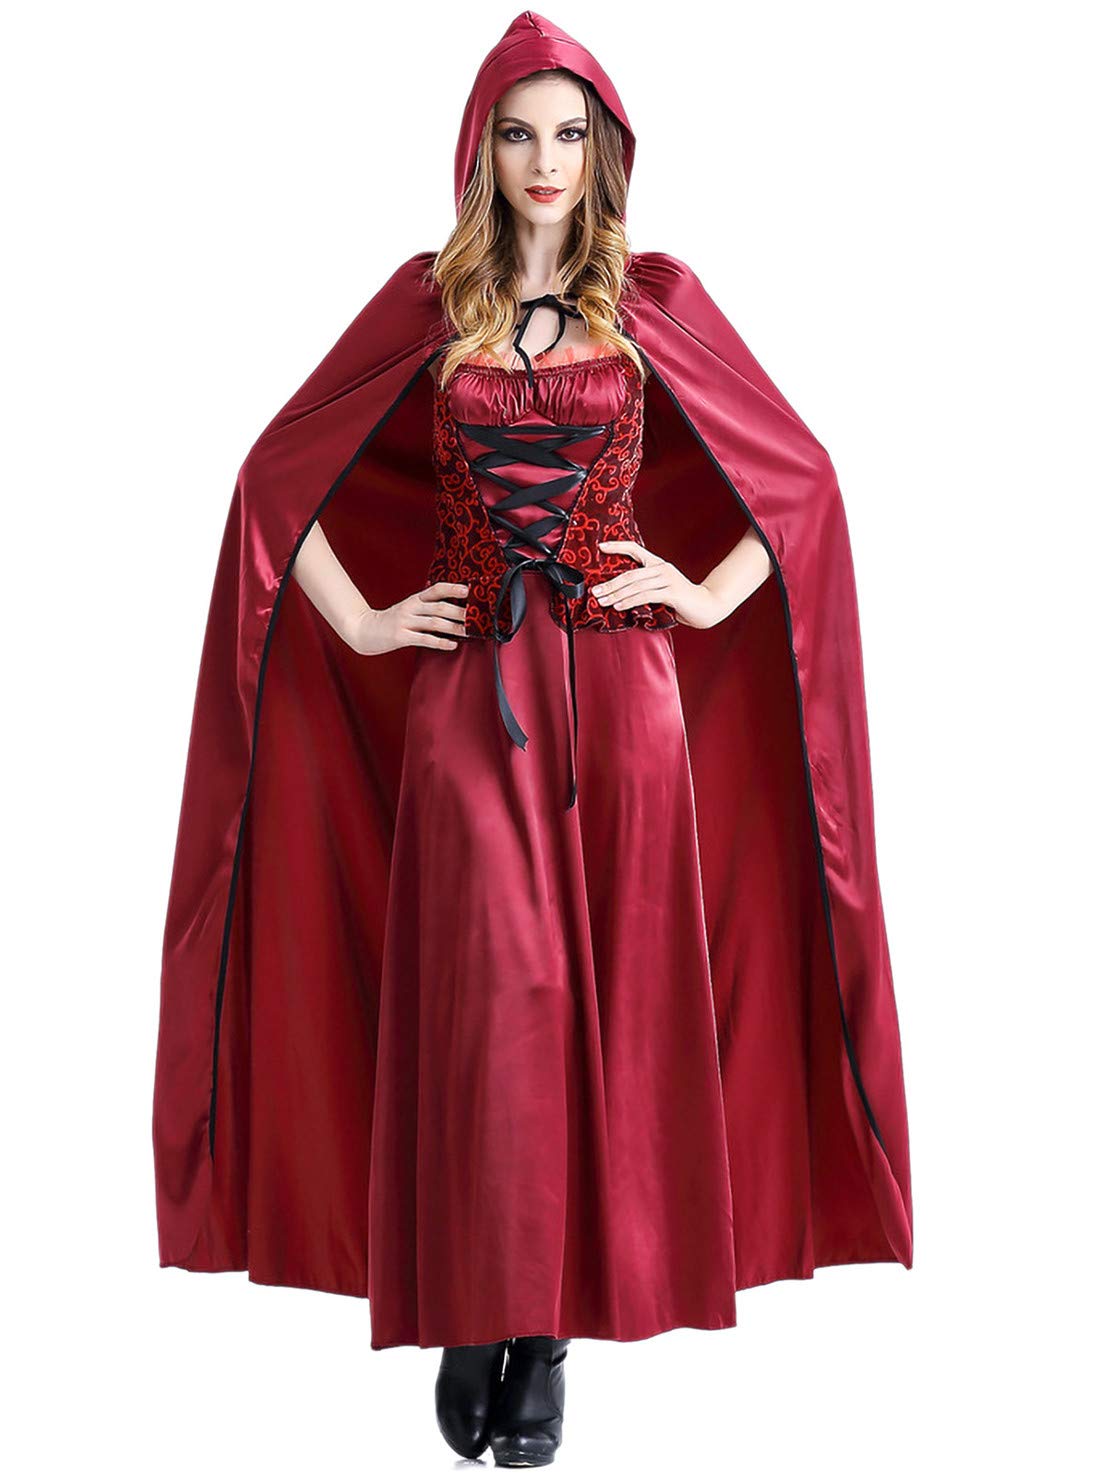 Monissy Damen Sexy Rotkäppchen Kostüm mit Umhang Zombie Ghost Kleid Burgfräulein Mittelalter Kostüm Halloween Weihnachten Performance Kleid Karneval Verkleidung Kostüm Rot M-XL